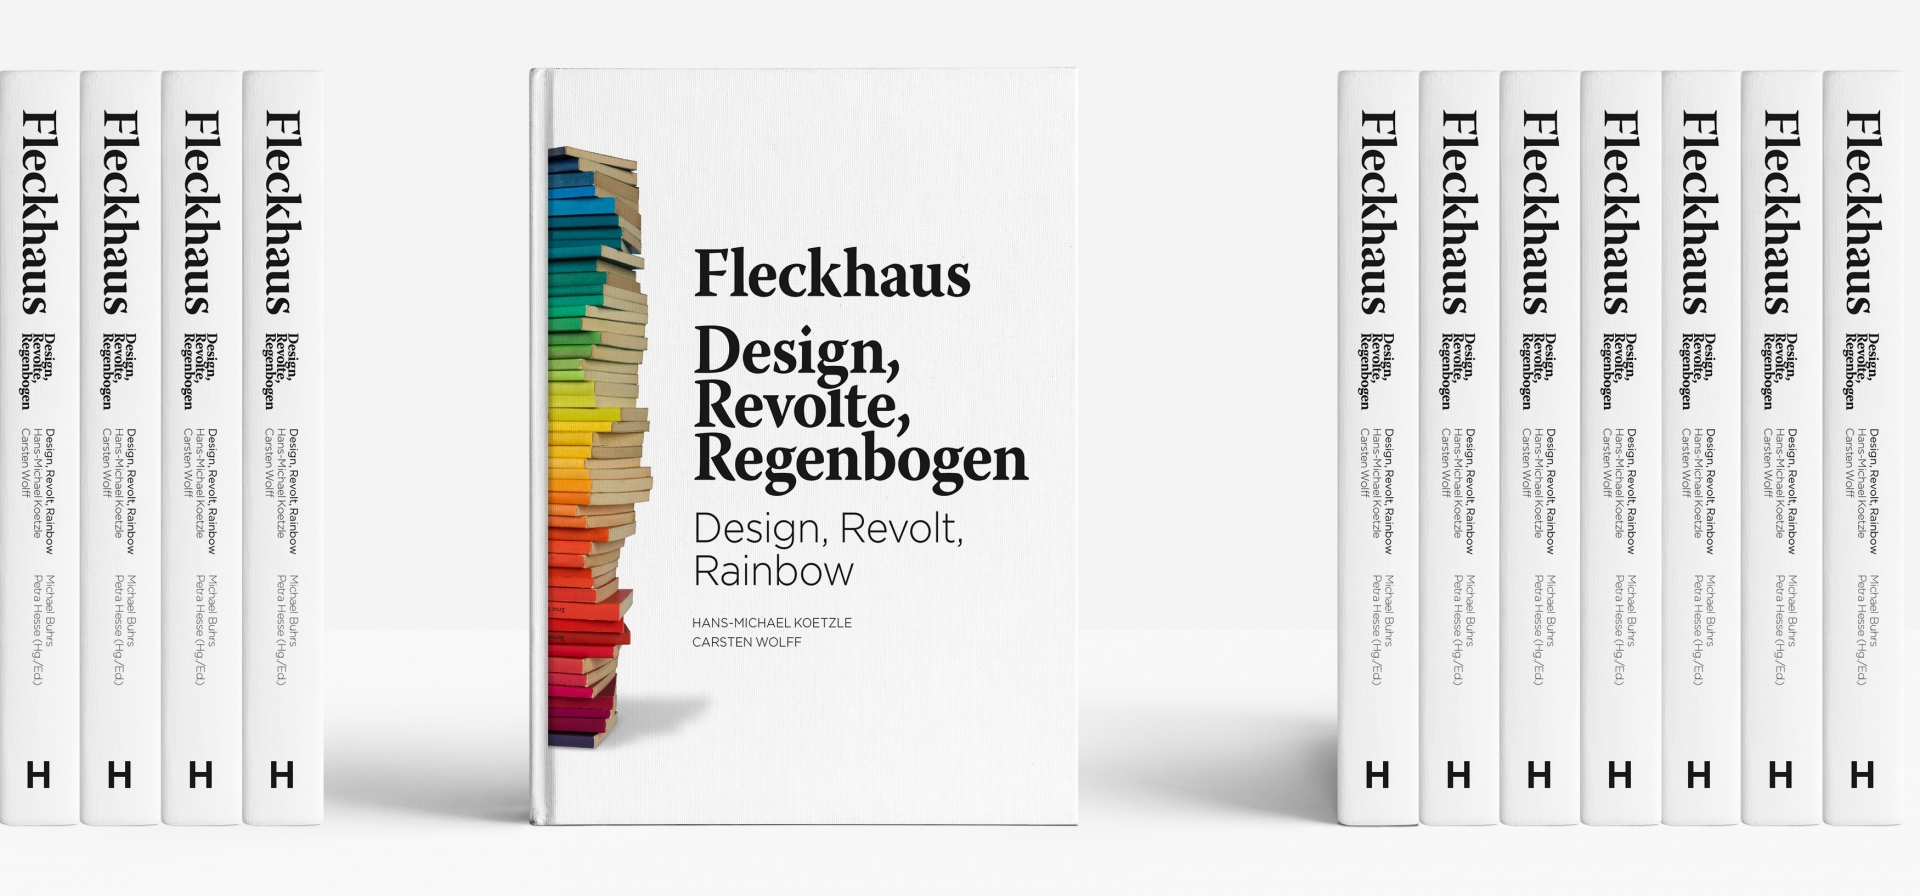 Buchgestaltung: Willy Fleckhaus: Design, Revolte, Regenbogen 